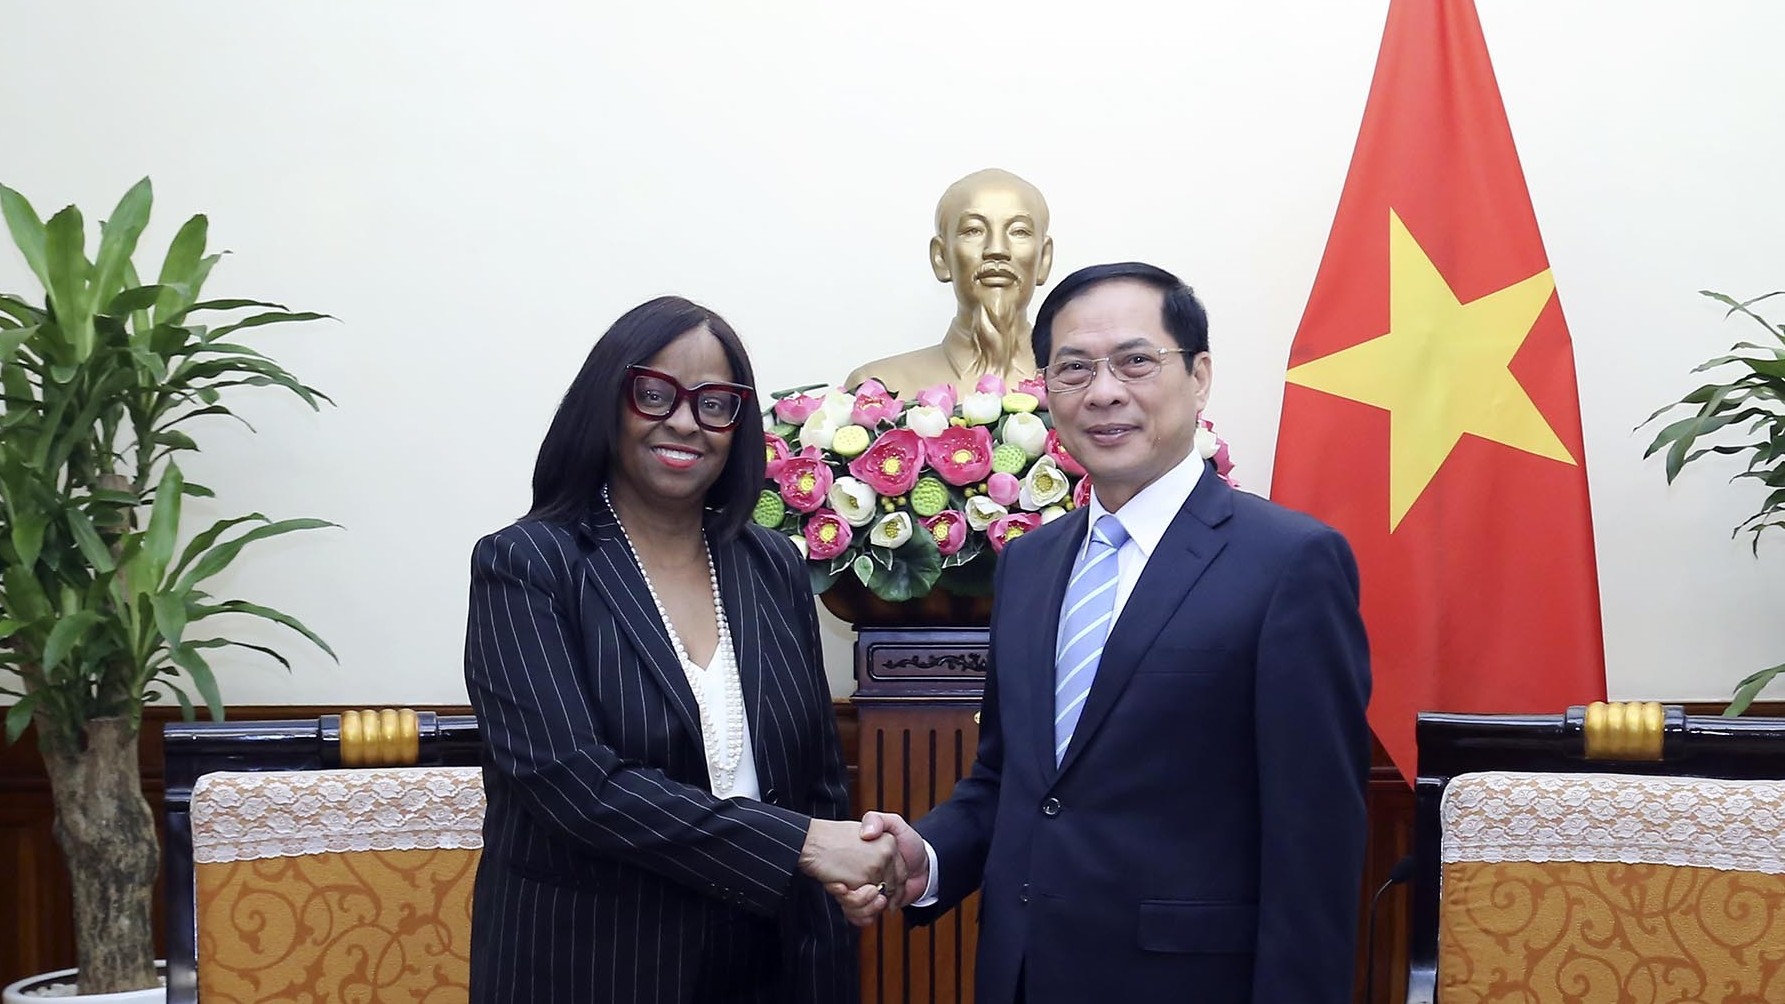 Bộ trưởng Bùi Thanh Sơn tiếp Chủ tịch Ngân hàng Xuất nhập khẩu Hoa Kỳ Eximbank